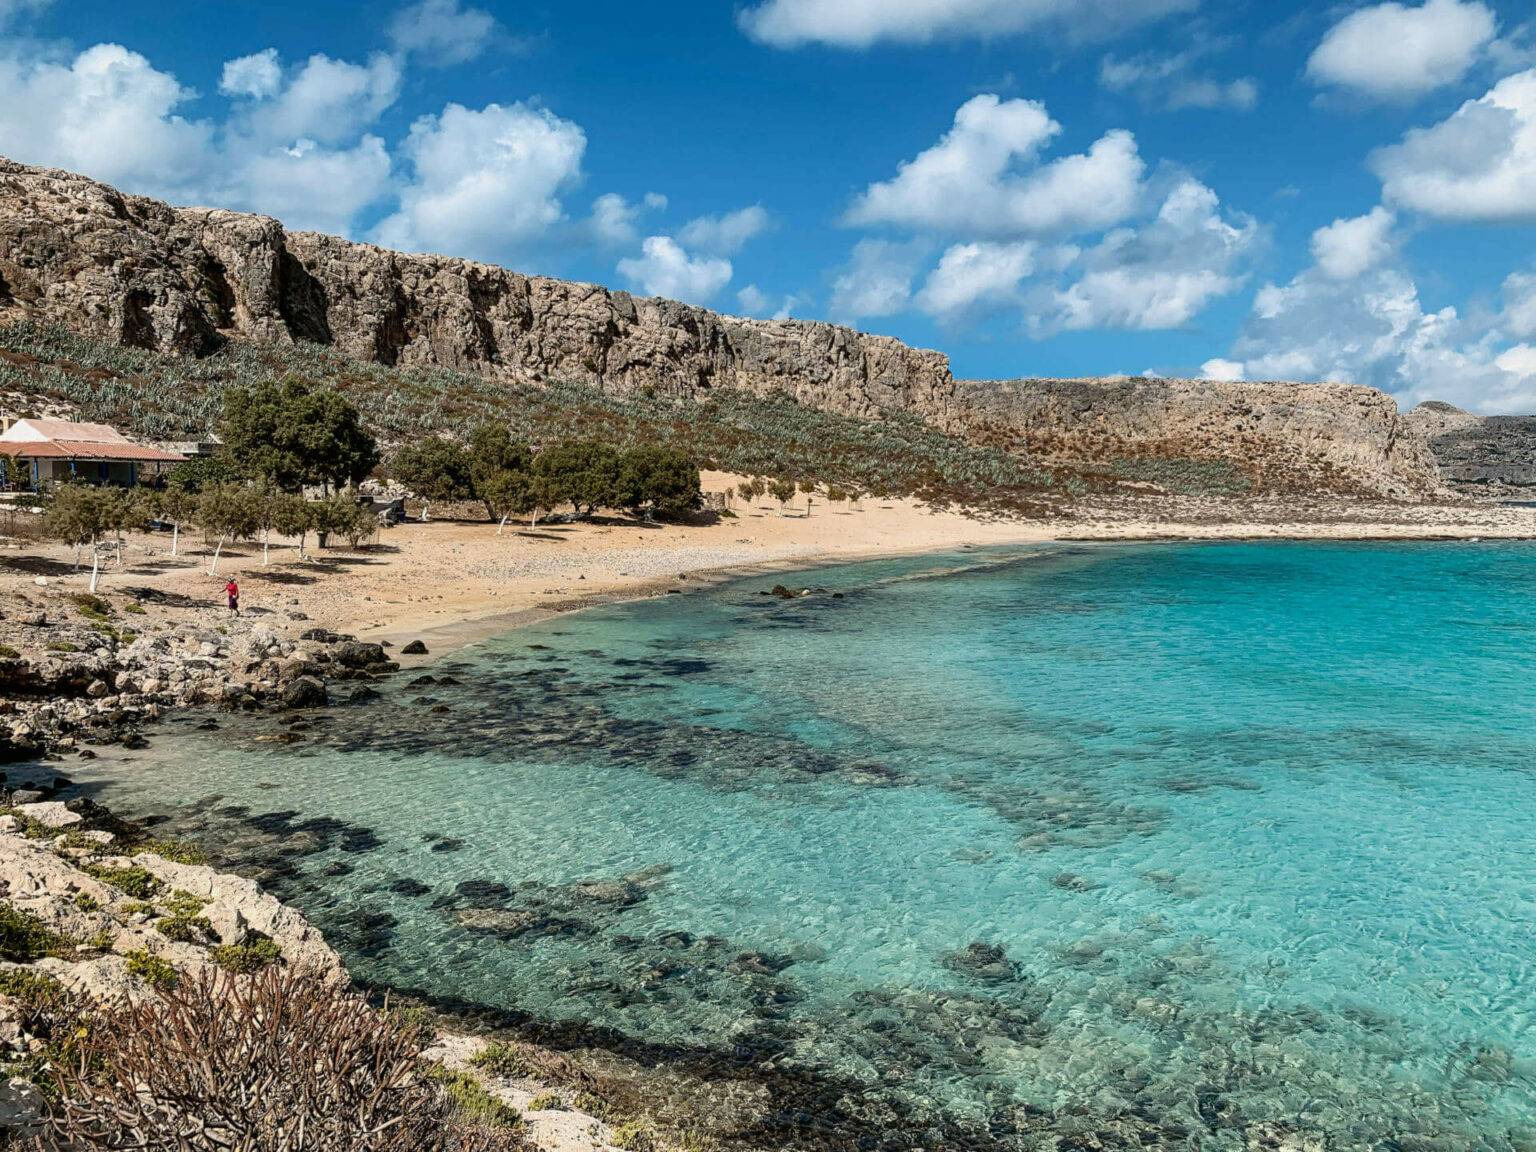 Der Blick auf die Bucht der Pirateninsel Gramvousa, türkisblaues Wasser und Felsen.